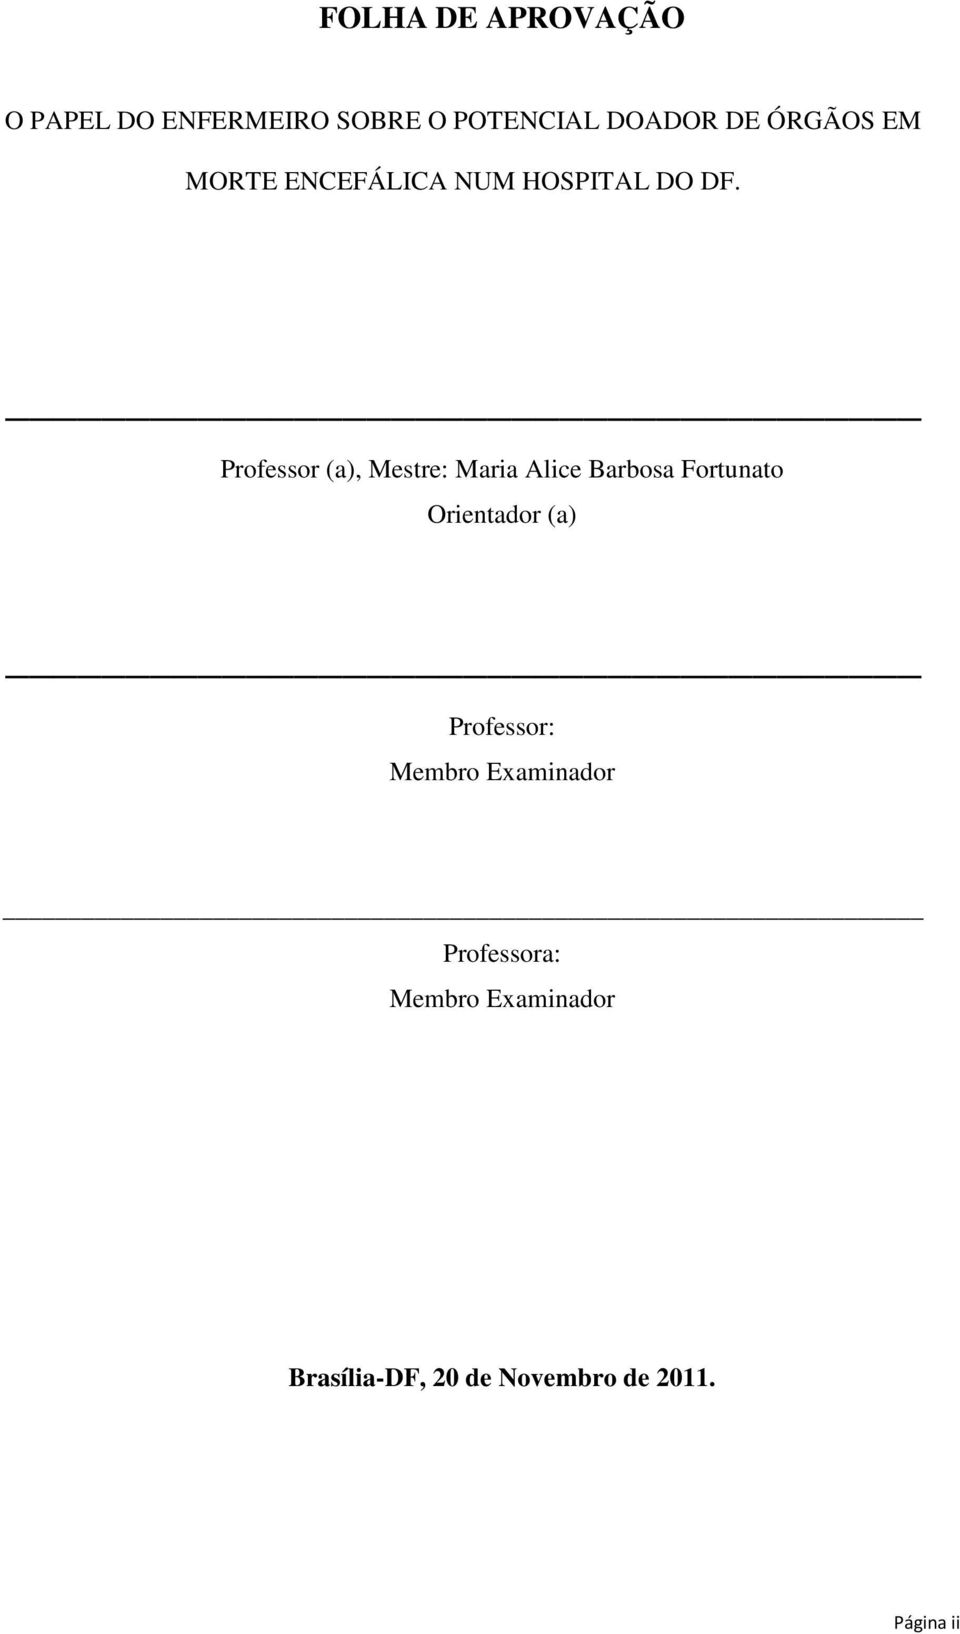 Professor (a), Mestre: Maria Alice Barbosa Fortunato Orientador (a)